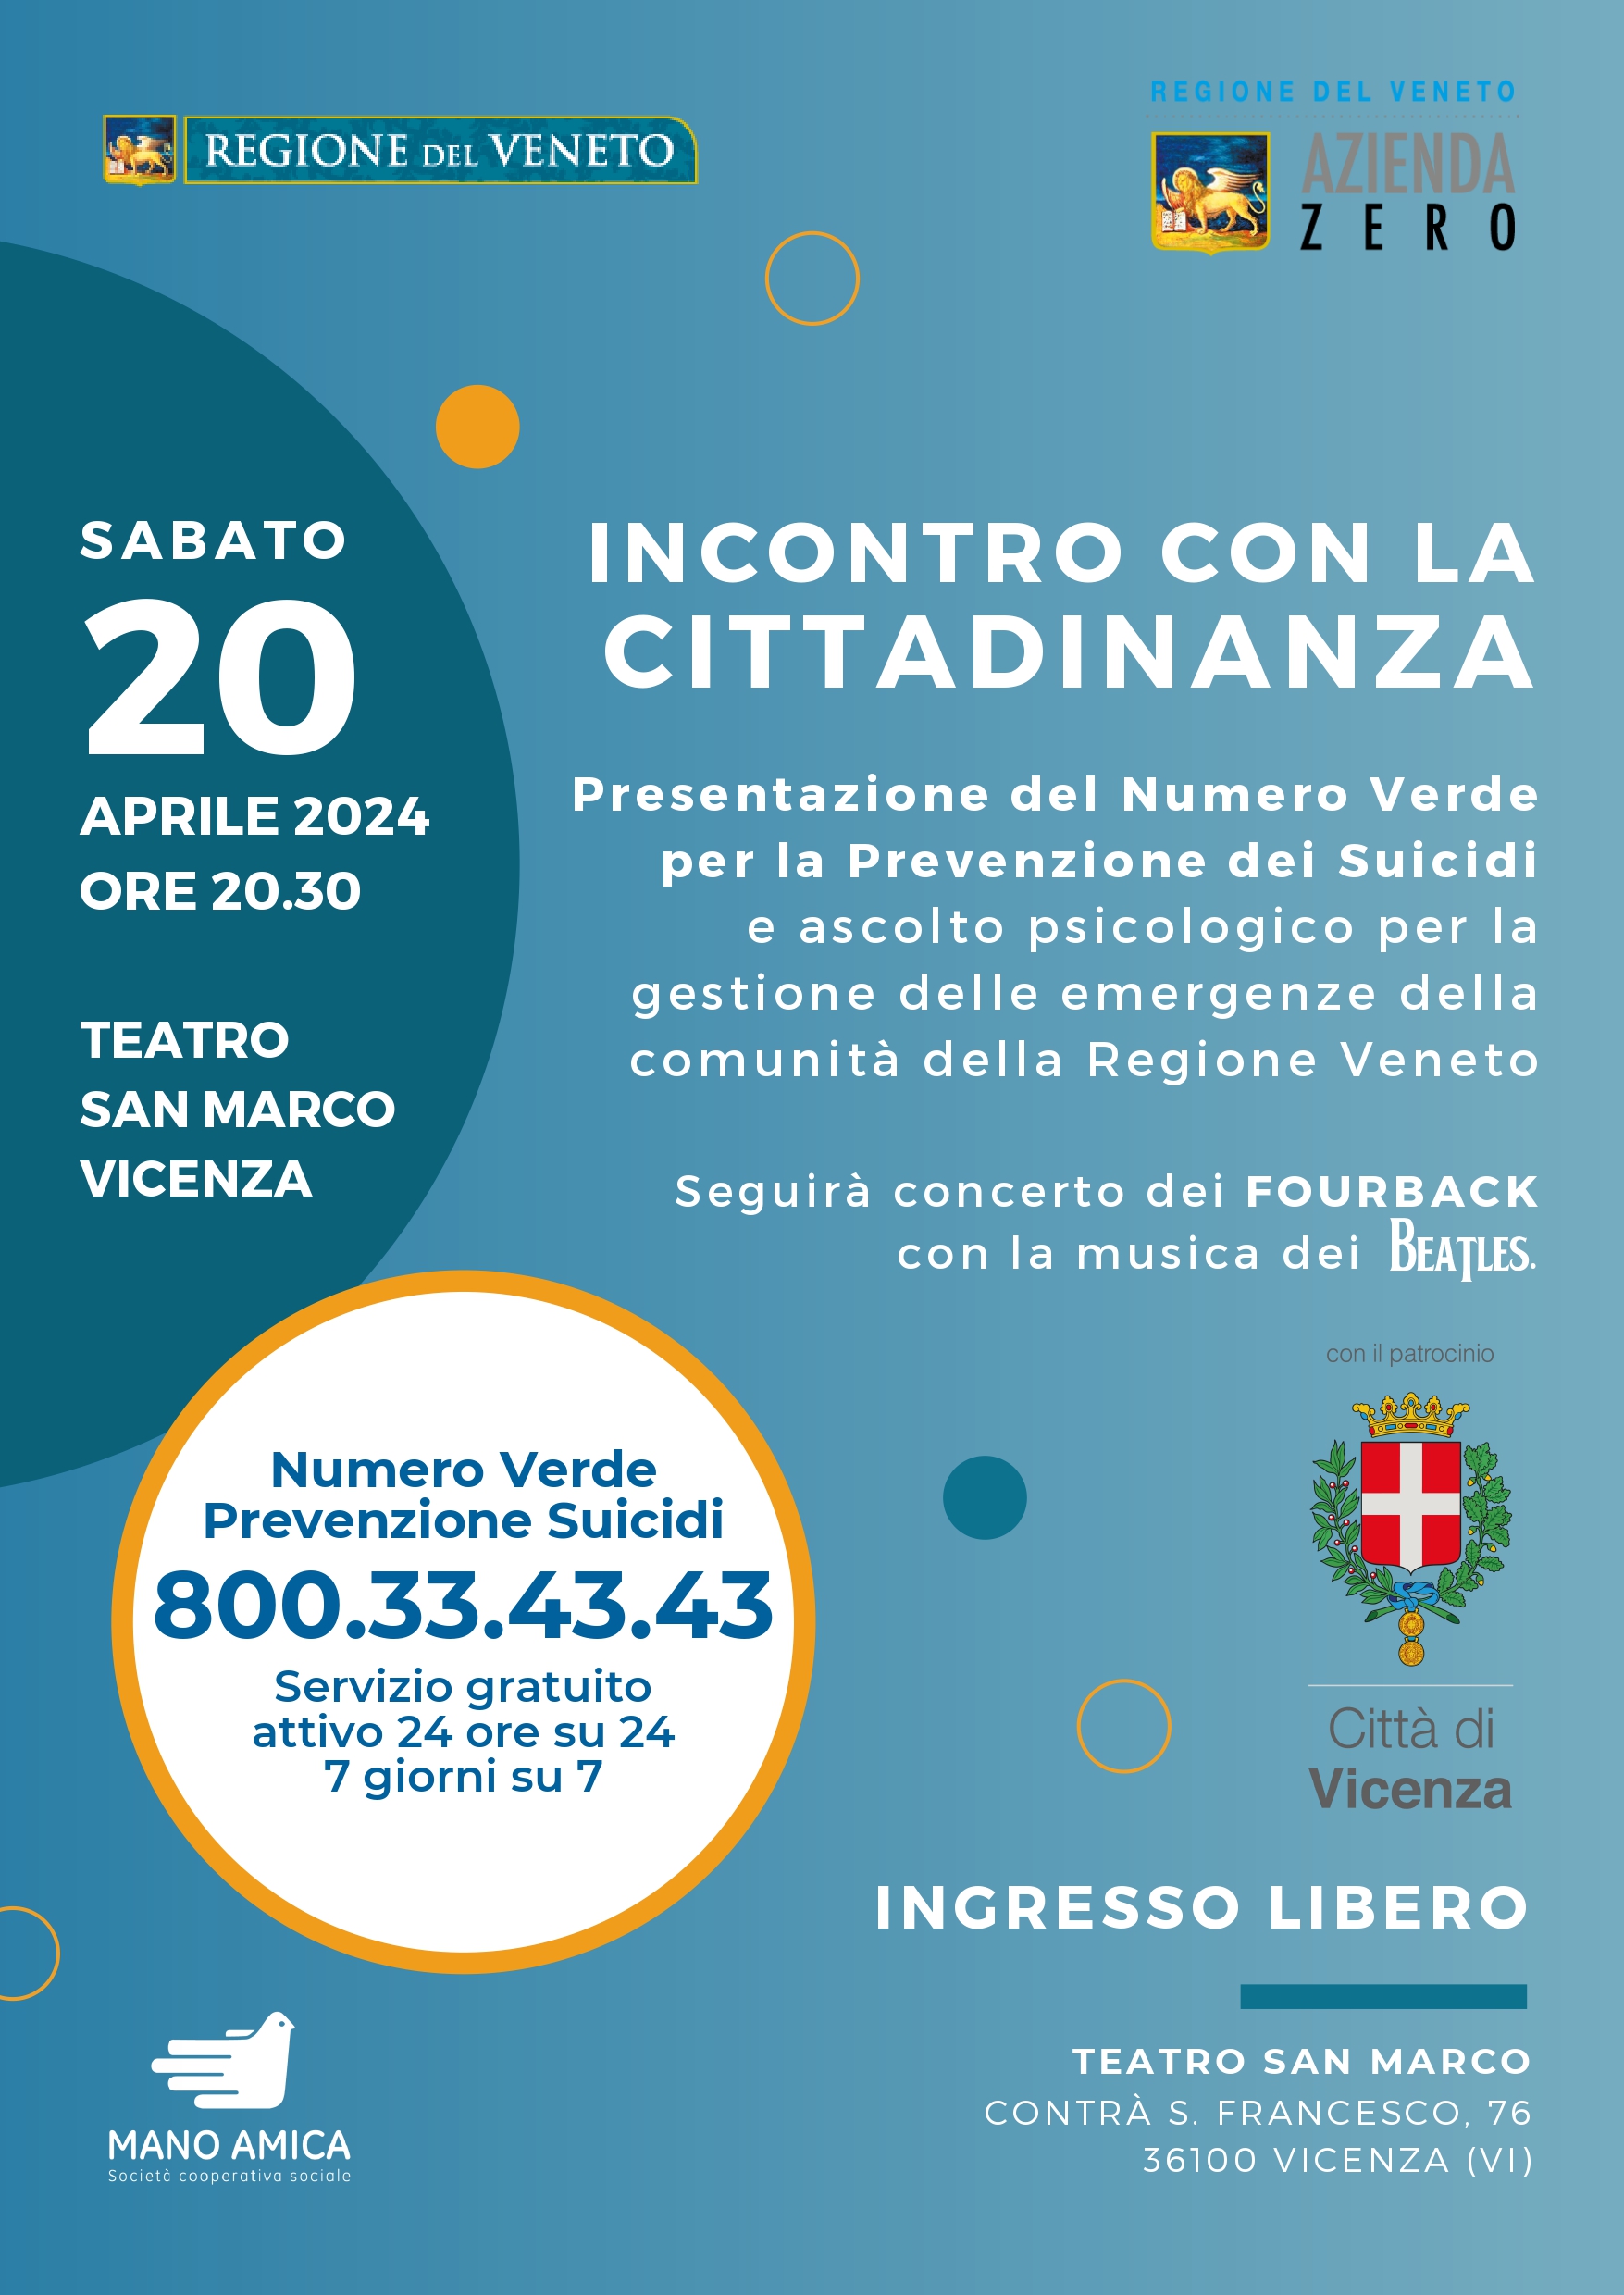 Numero Verde 800.33.43.43 della Regione del Veneto per la prevenzione dei suicidi e di ascolto psicologico per la gestione delle emergenze della comunità